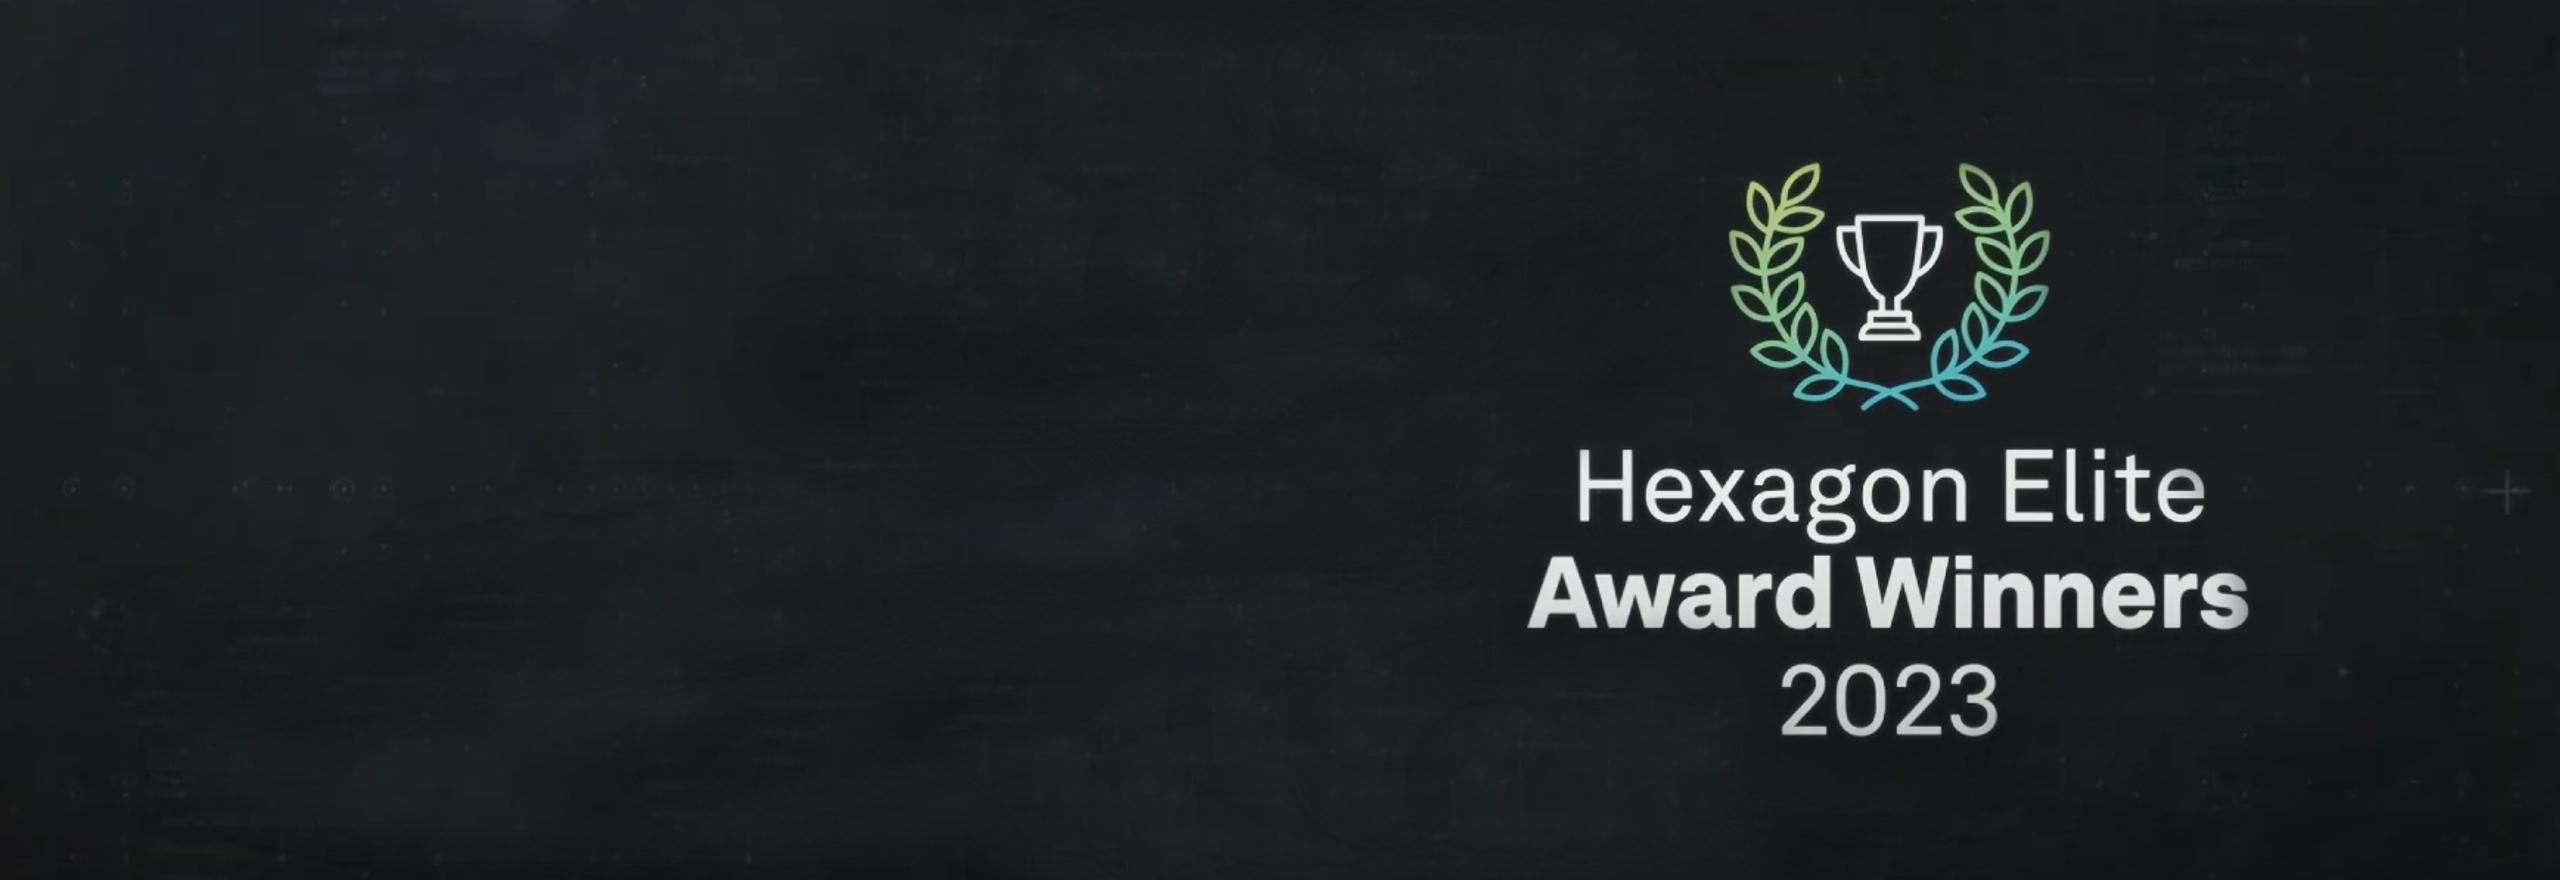 2023 Hexagon Elite Awards